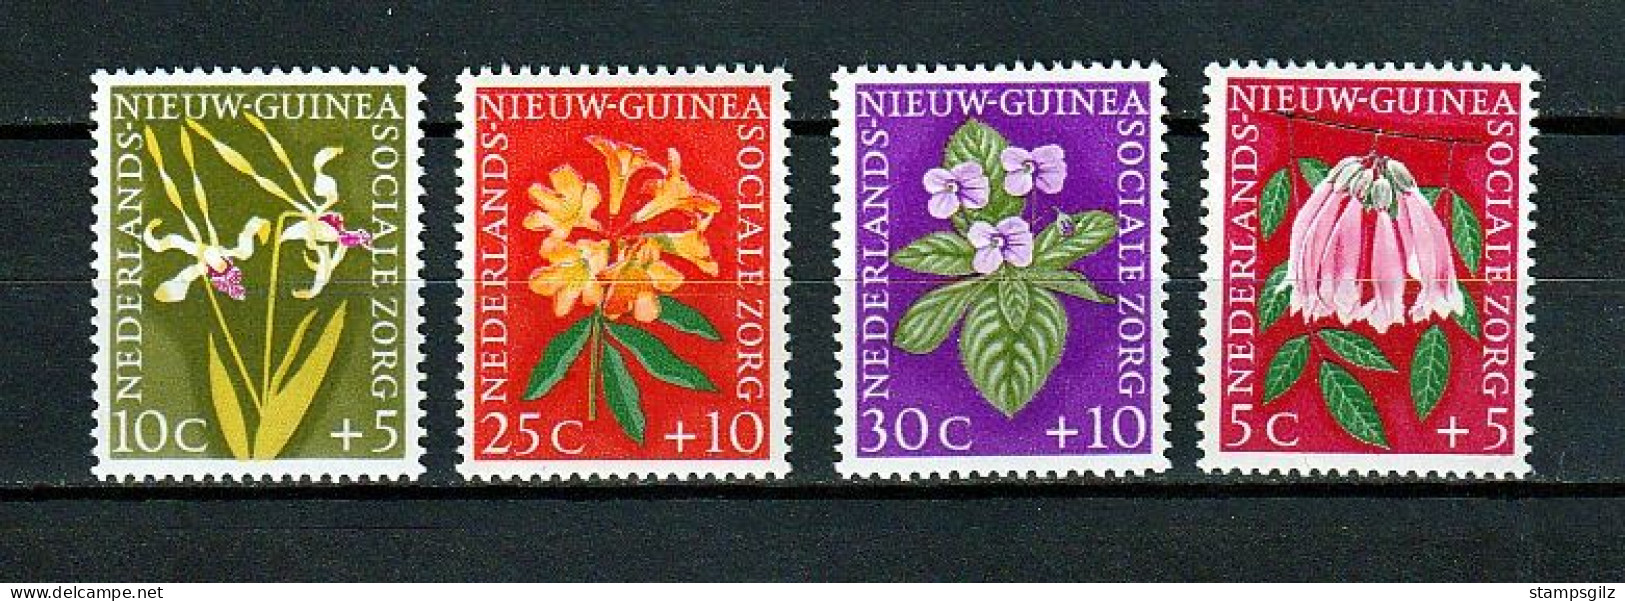 NOUVELLE GUINEE NEERLANDAISE N° 52/5**,  1959 TB - Netherlands New Guinea